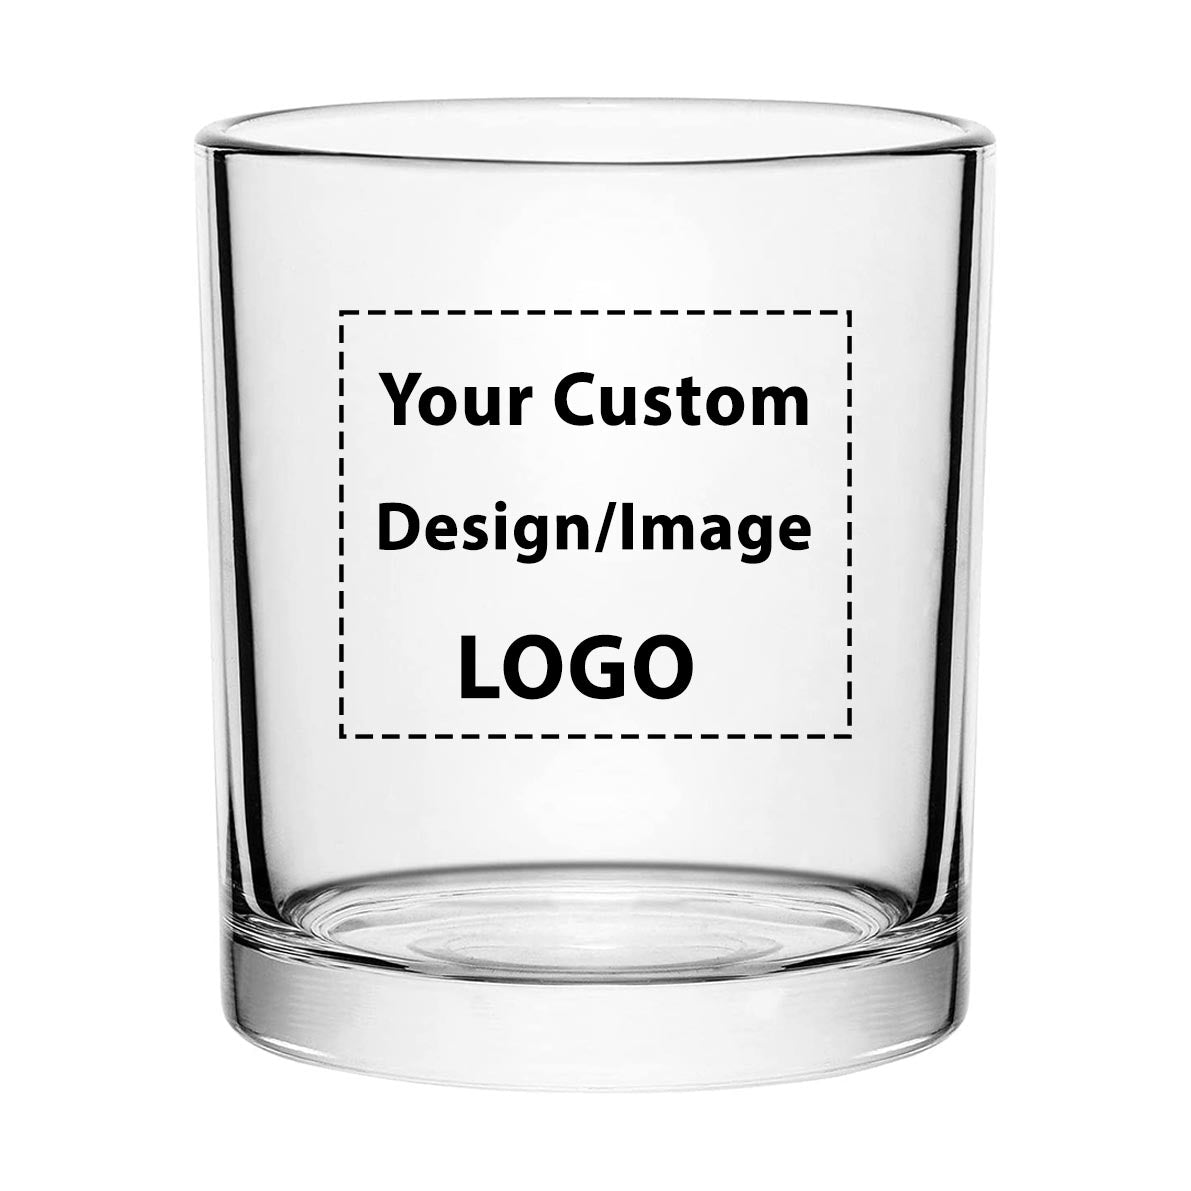 Custom Design/Image/Logo Designed Special Whiskey Glasses